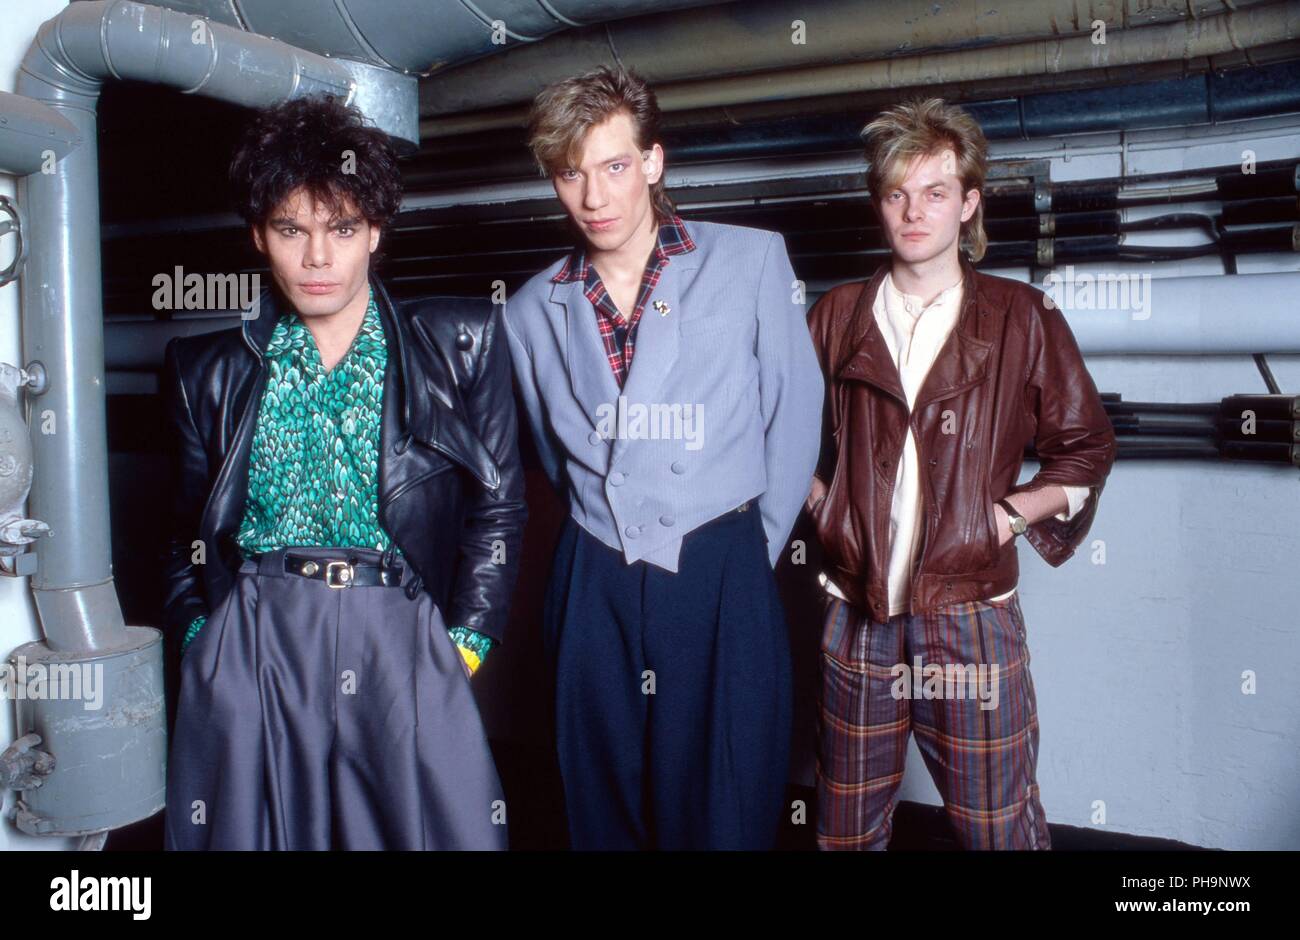 Alphaville", deutsche Synthie Pop Band, beim Fotoshooting vor einem Konzert  in Dortmund, Deutschland 1984. German synth pop band "Alphaville" strikin  Stock Photo - Alamy